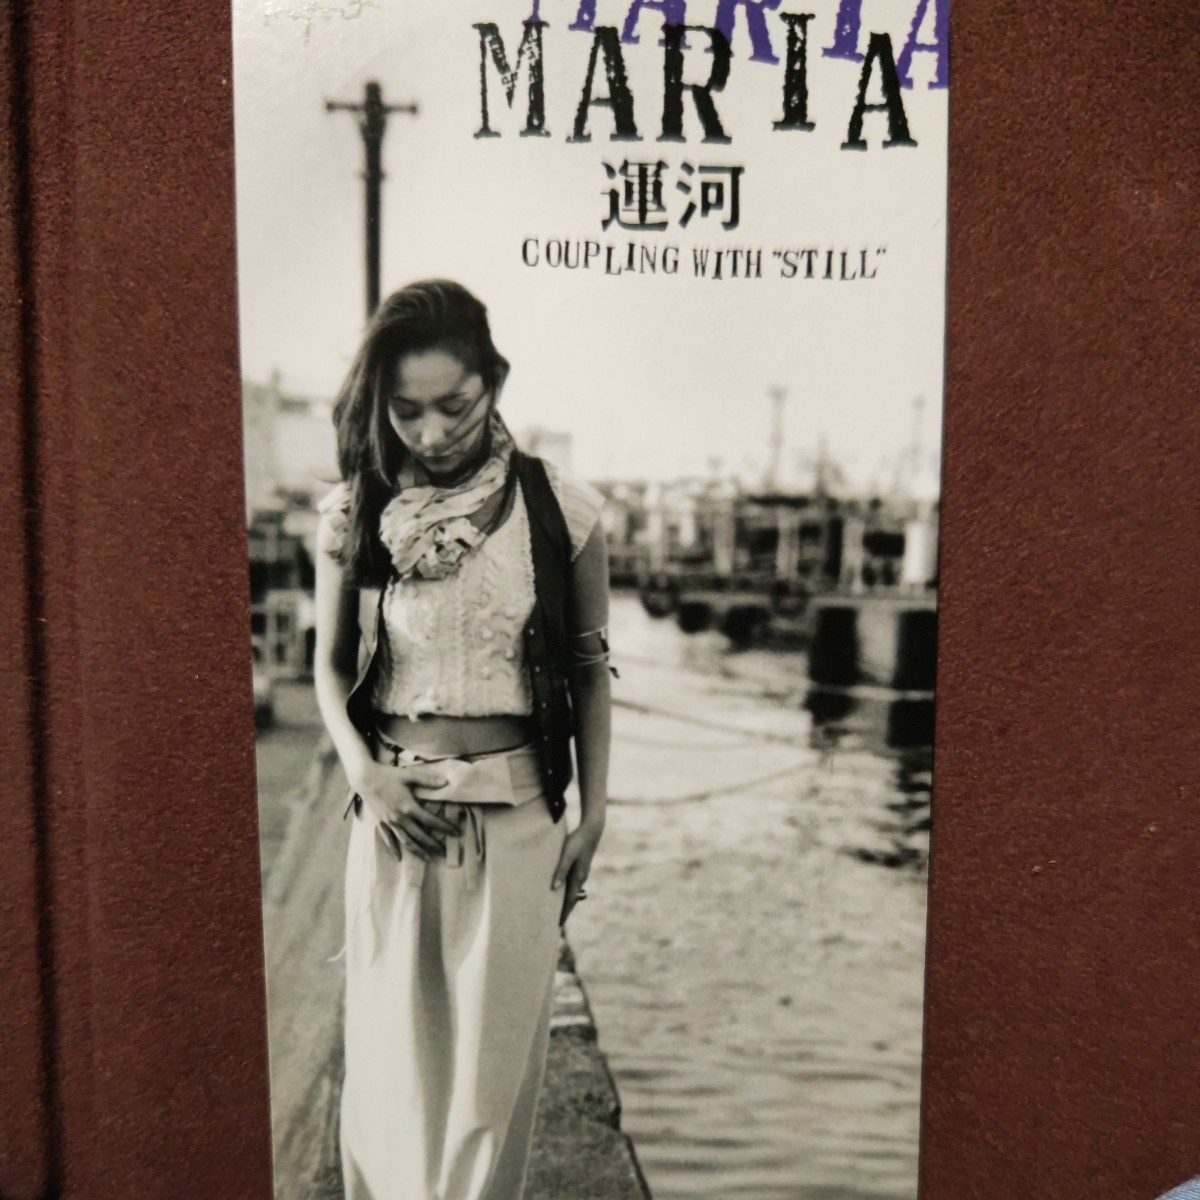 ★５★ MARIA のシングルCD 「運河」プロモ用見本盤です。産経新聞CM_画像1